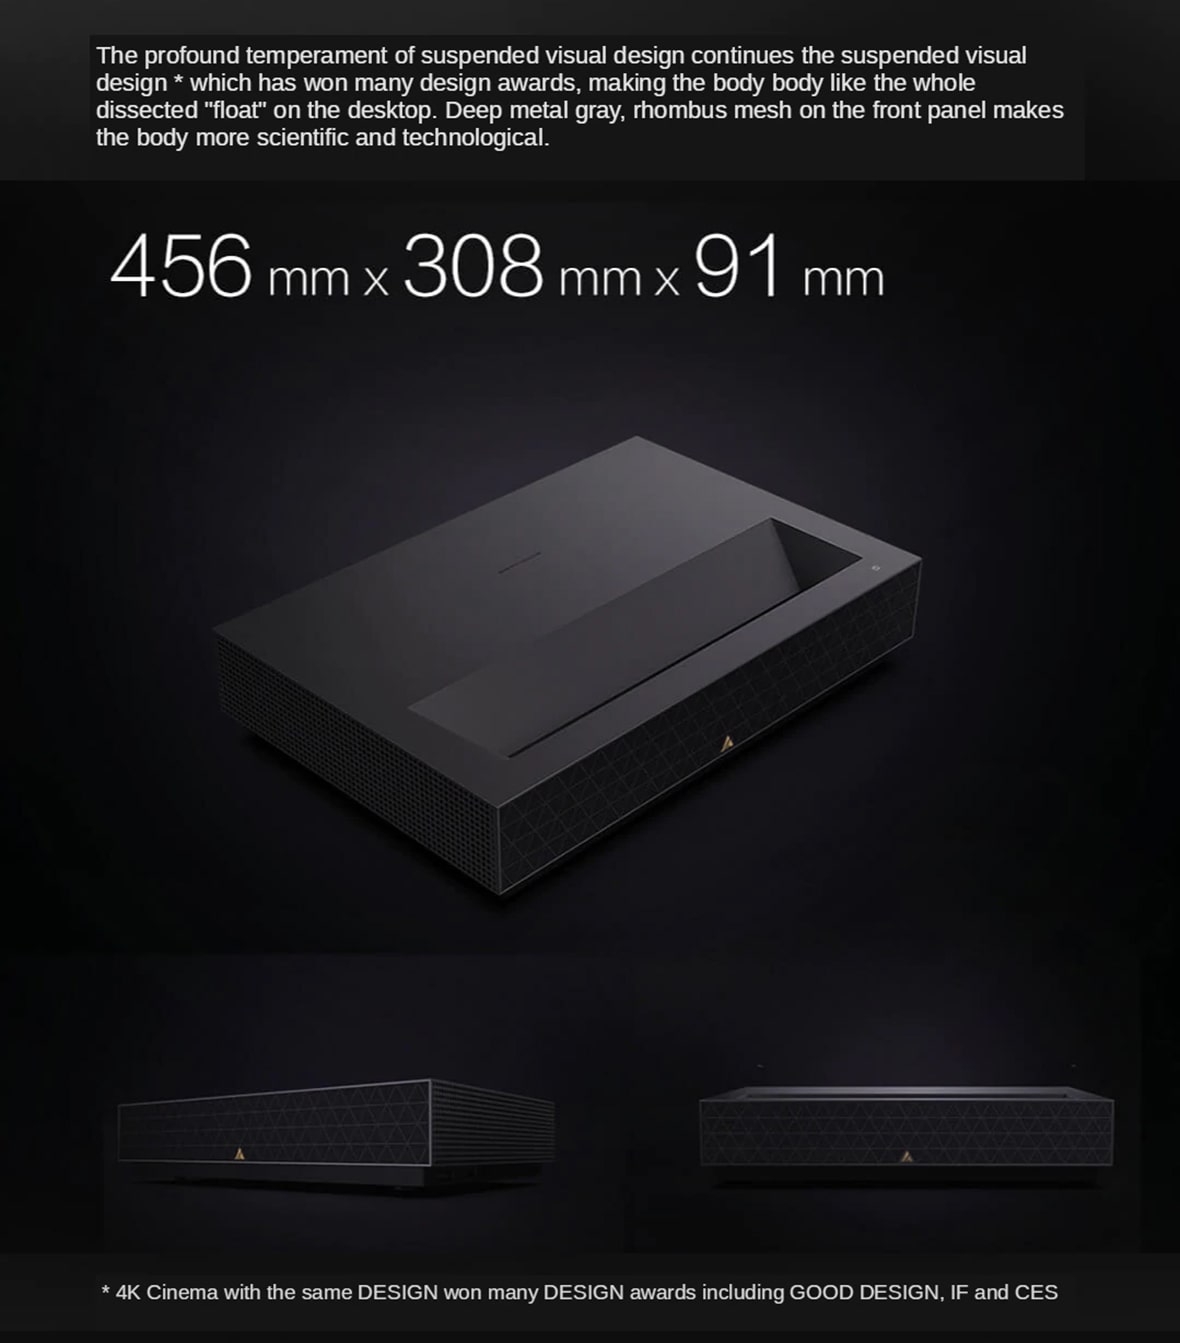 Llega el nuevo proyector 4K UST Fengmi Laser TV C3